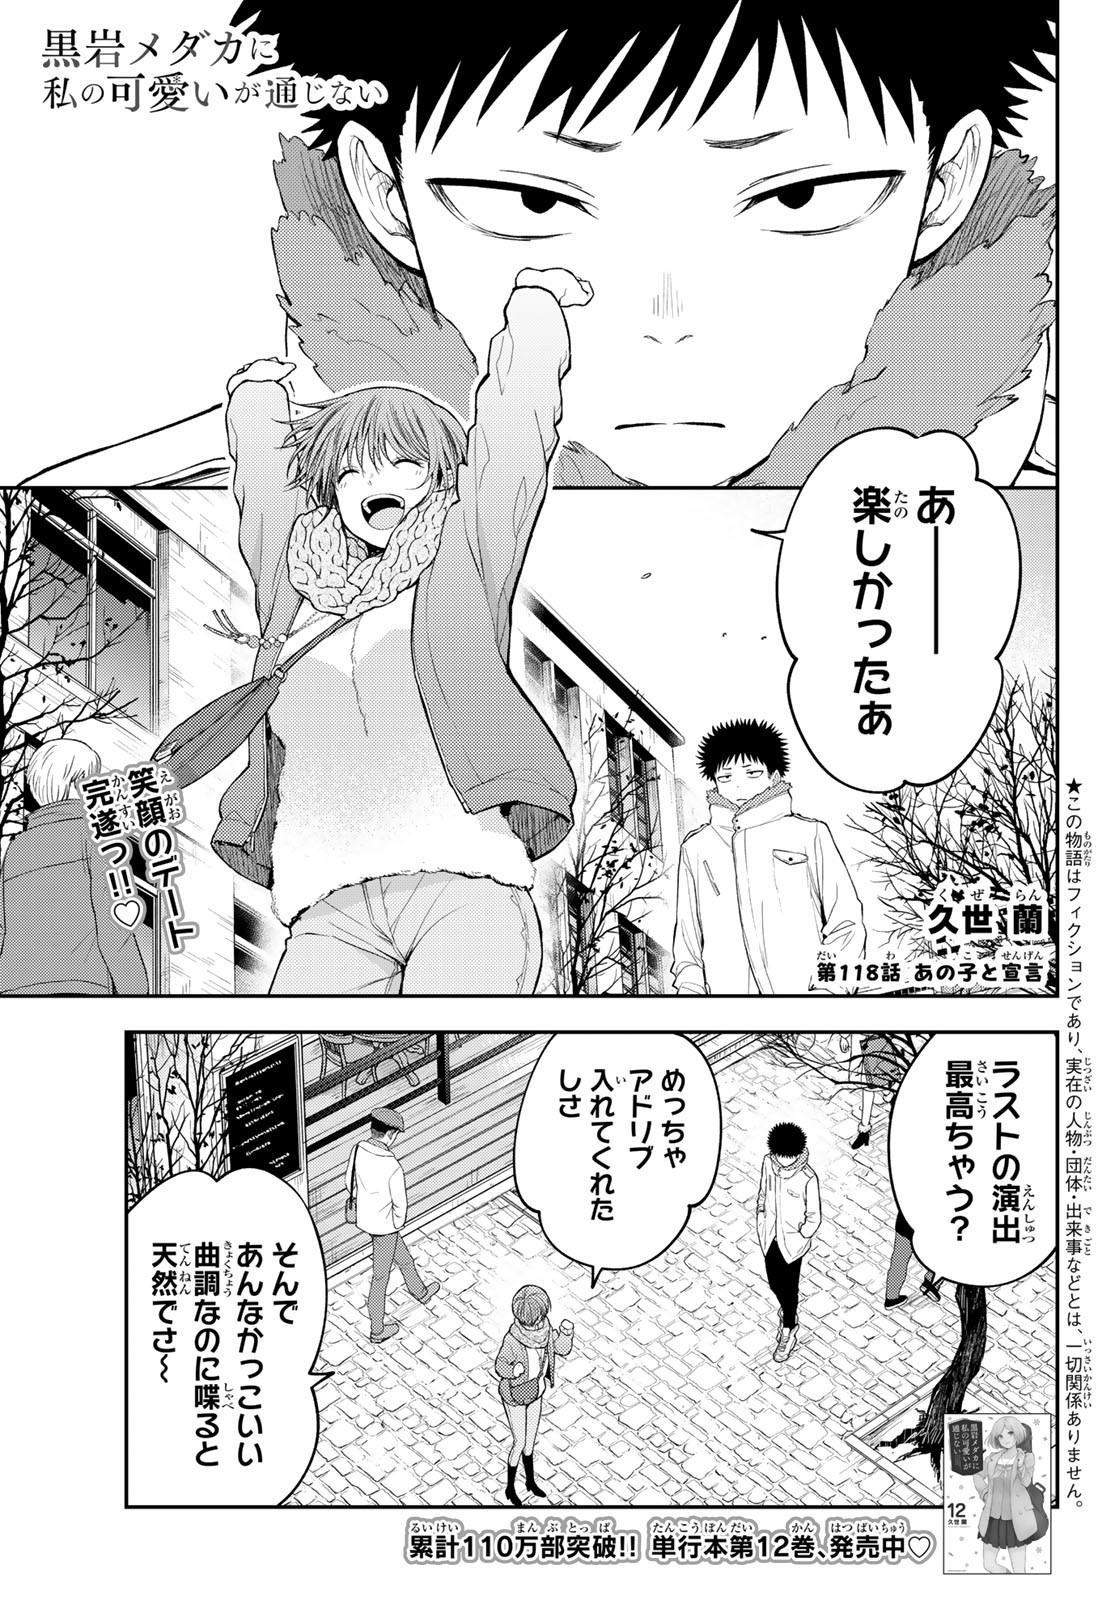 Kuroiwa Medaka ni Watashi no Kawaii ga Tsuujinai - Chapter 118 - Page 1